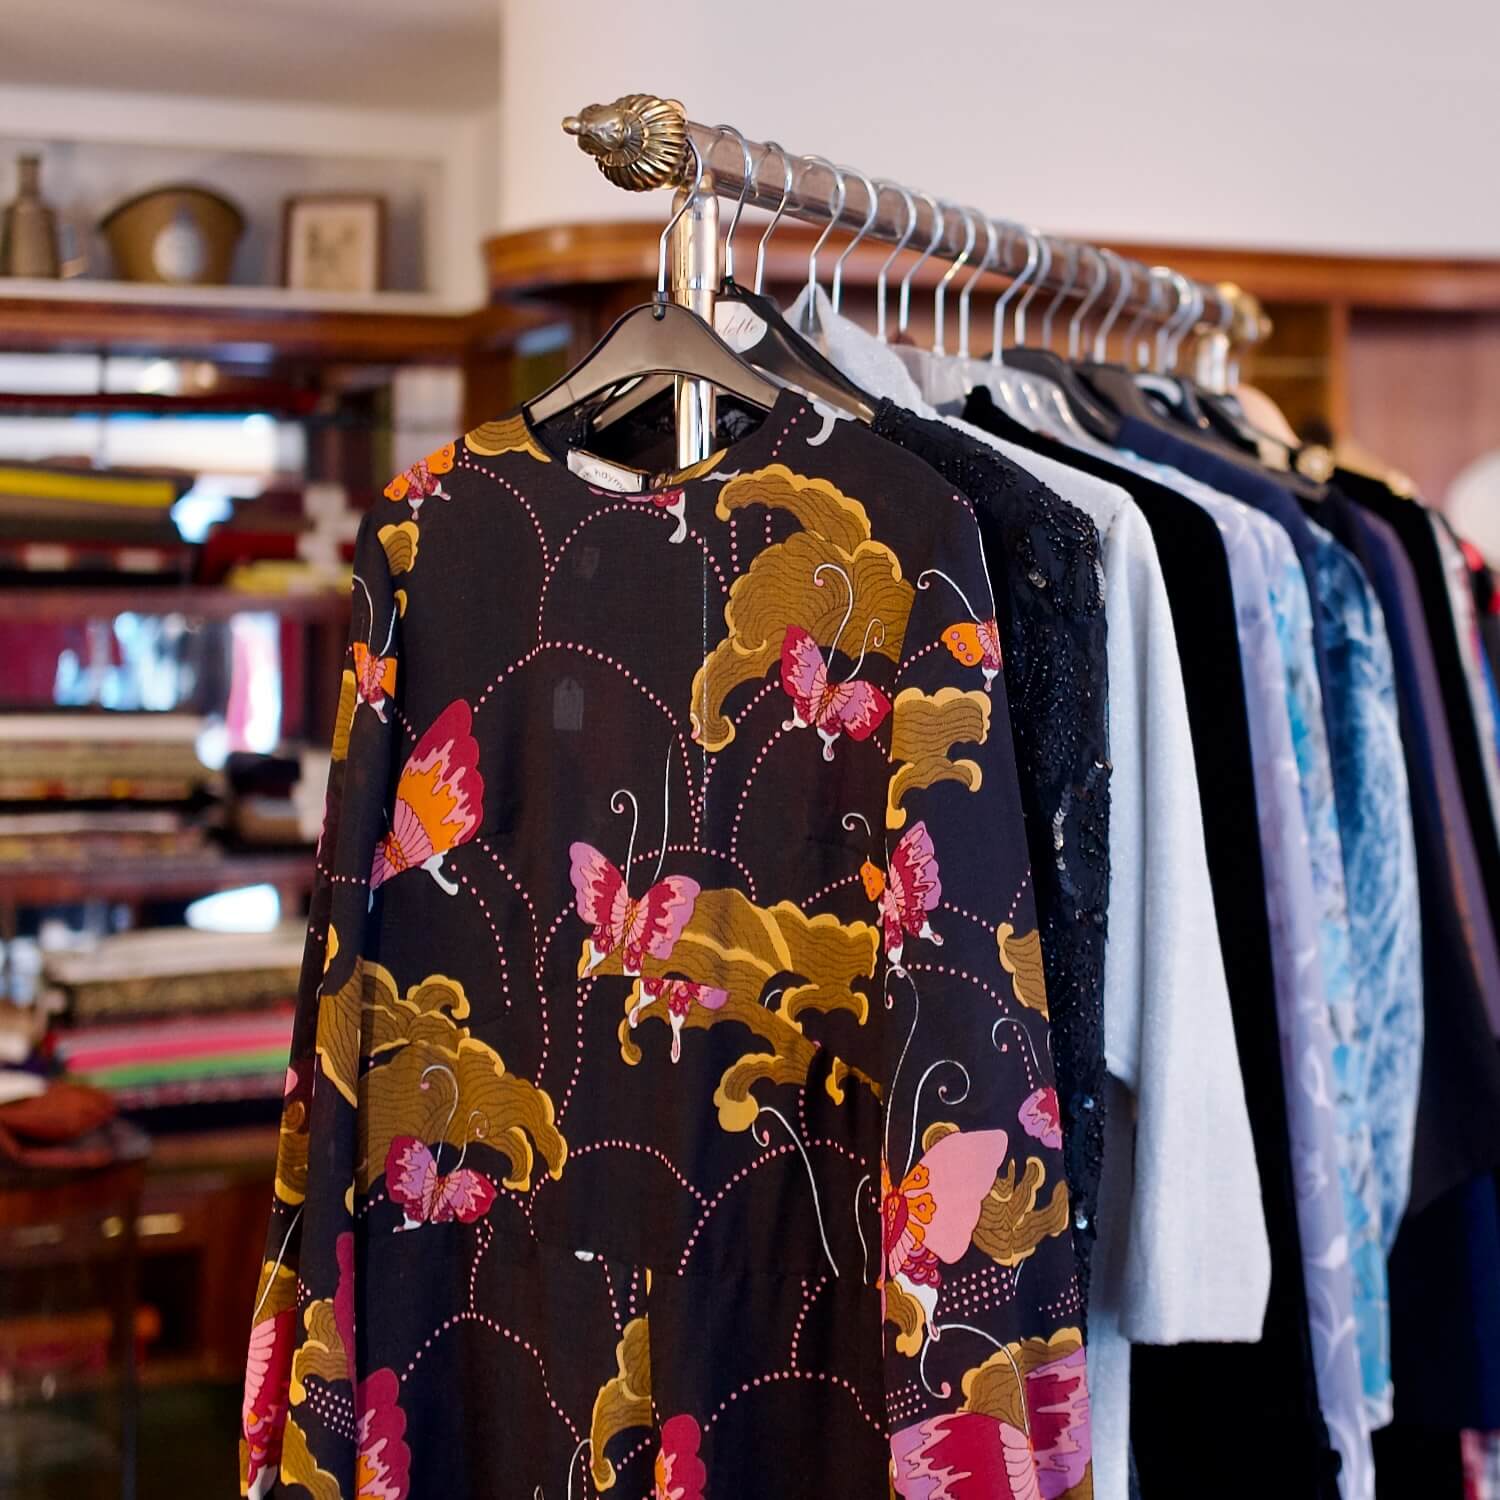 Ein Kleiderständer mit ausgewählter Secondhand-Kleidung, darunter eine wunderschöne Bluse mit Schmetterlingsmuster bei Aventures de Paulette in Hamburg, entdecke nachhaltige und einzigartige Fashion.